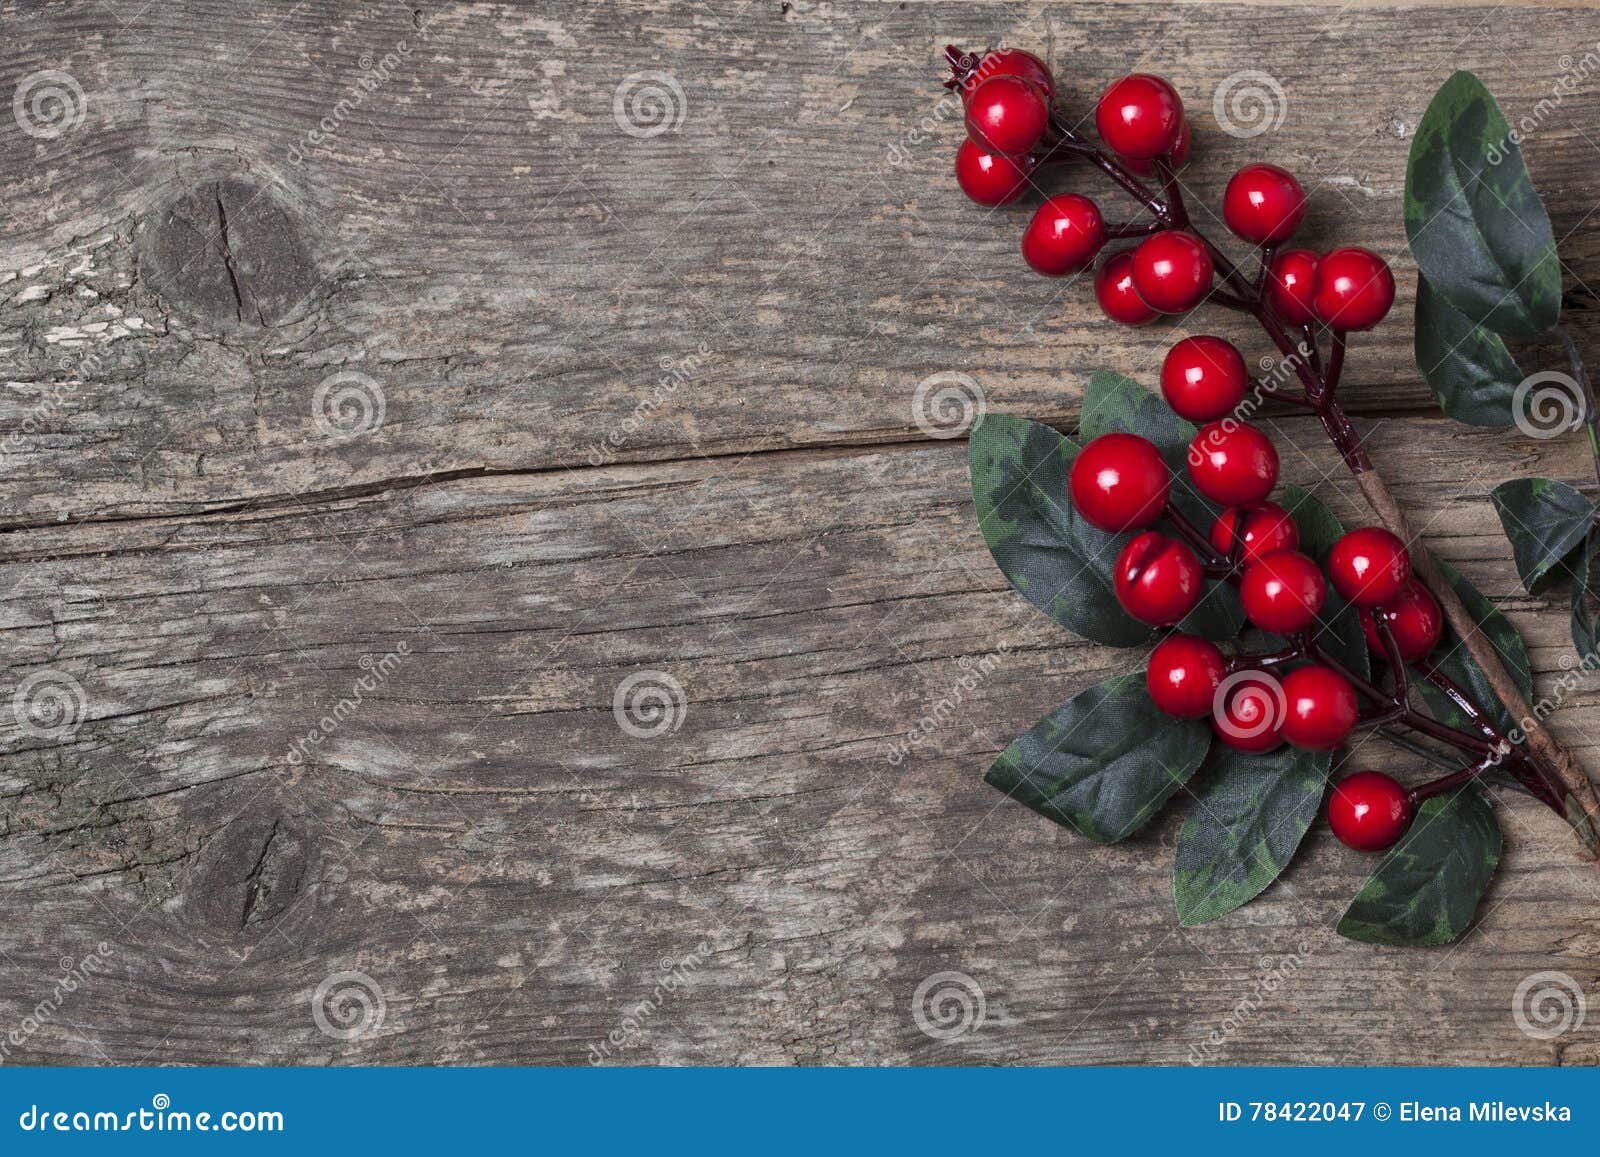 De Rode Bessen Van Kerstmisdecoratie Stock Afbeelding - Image of ...